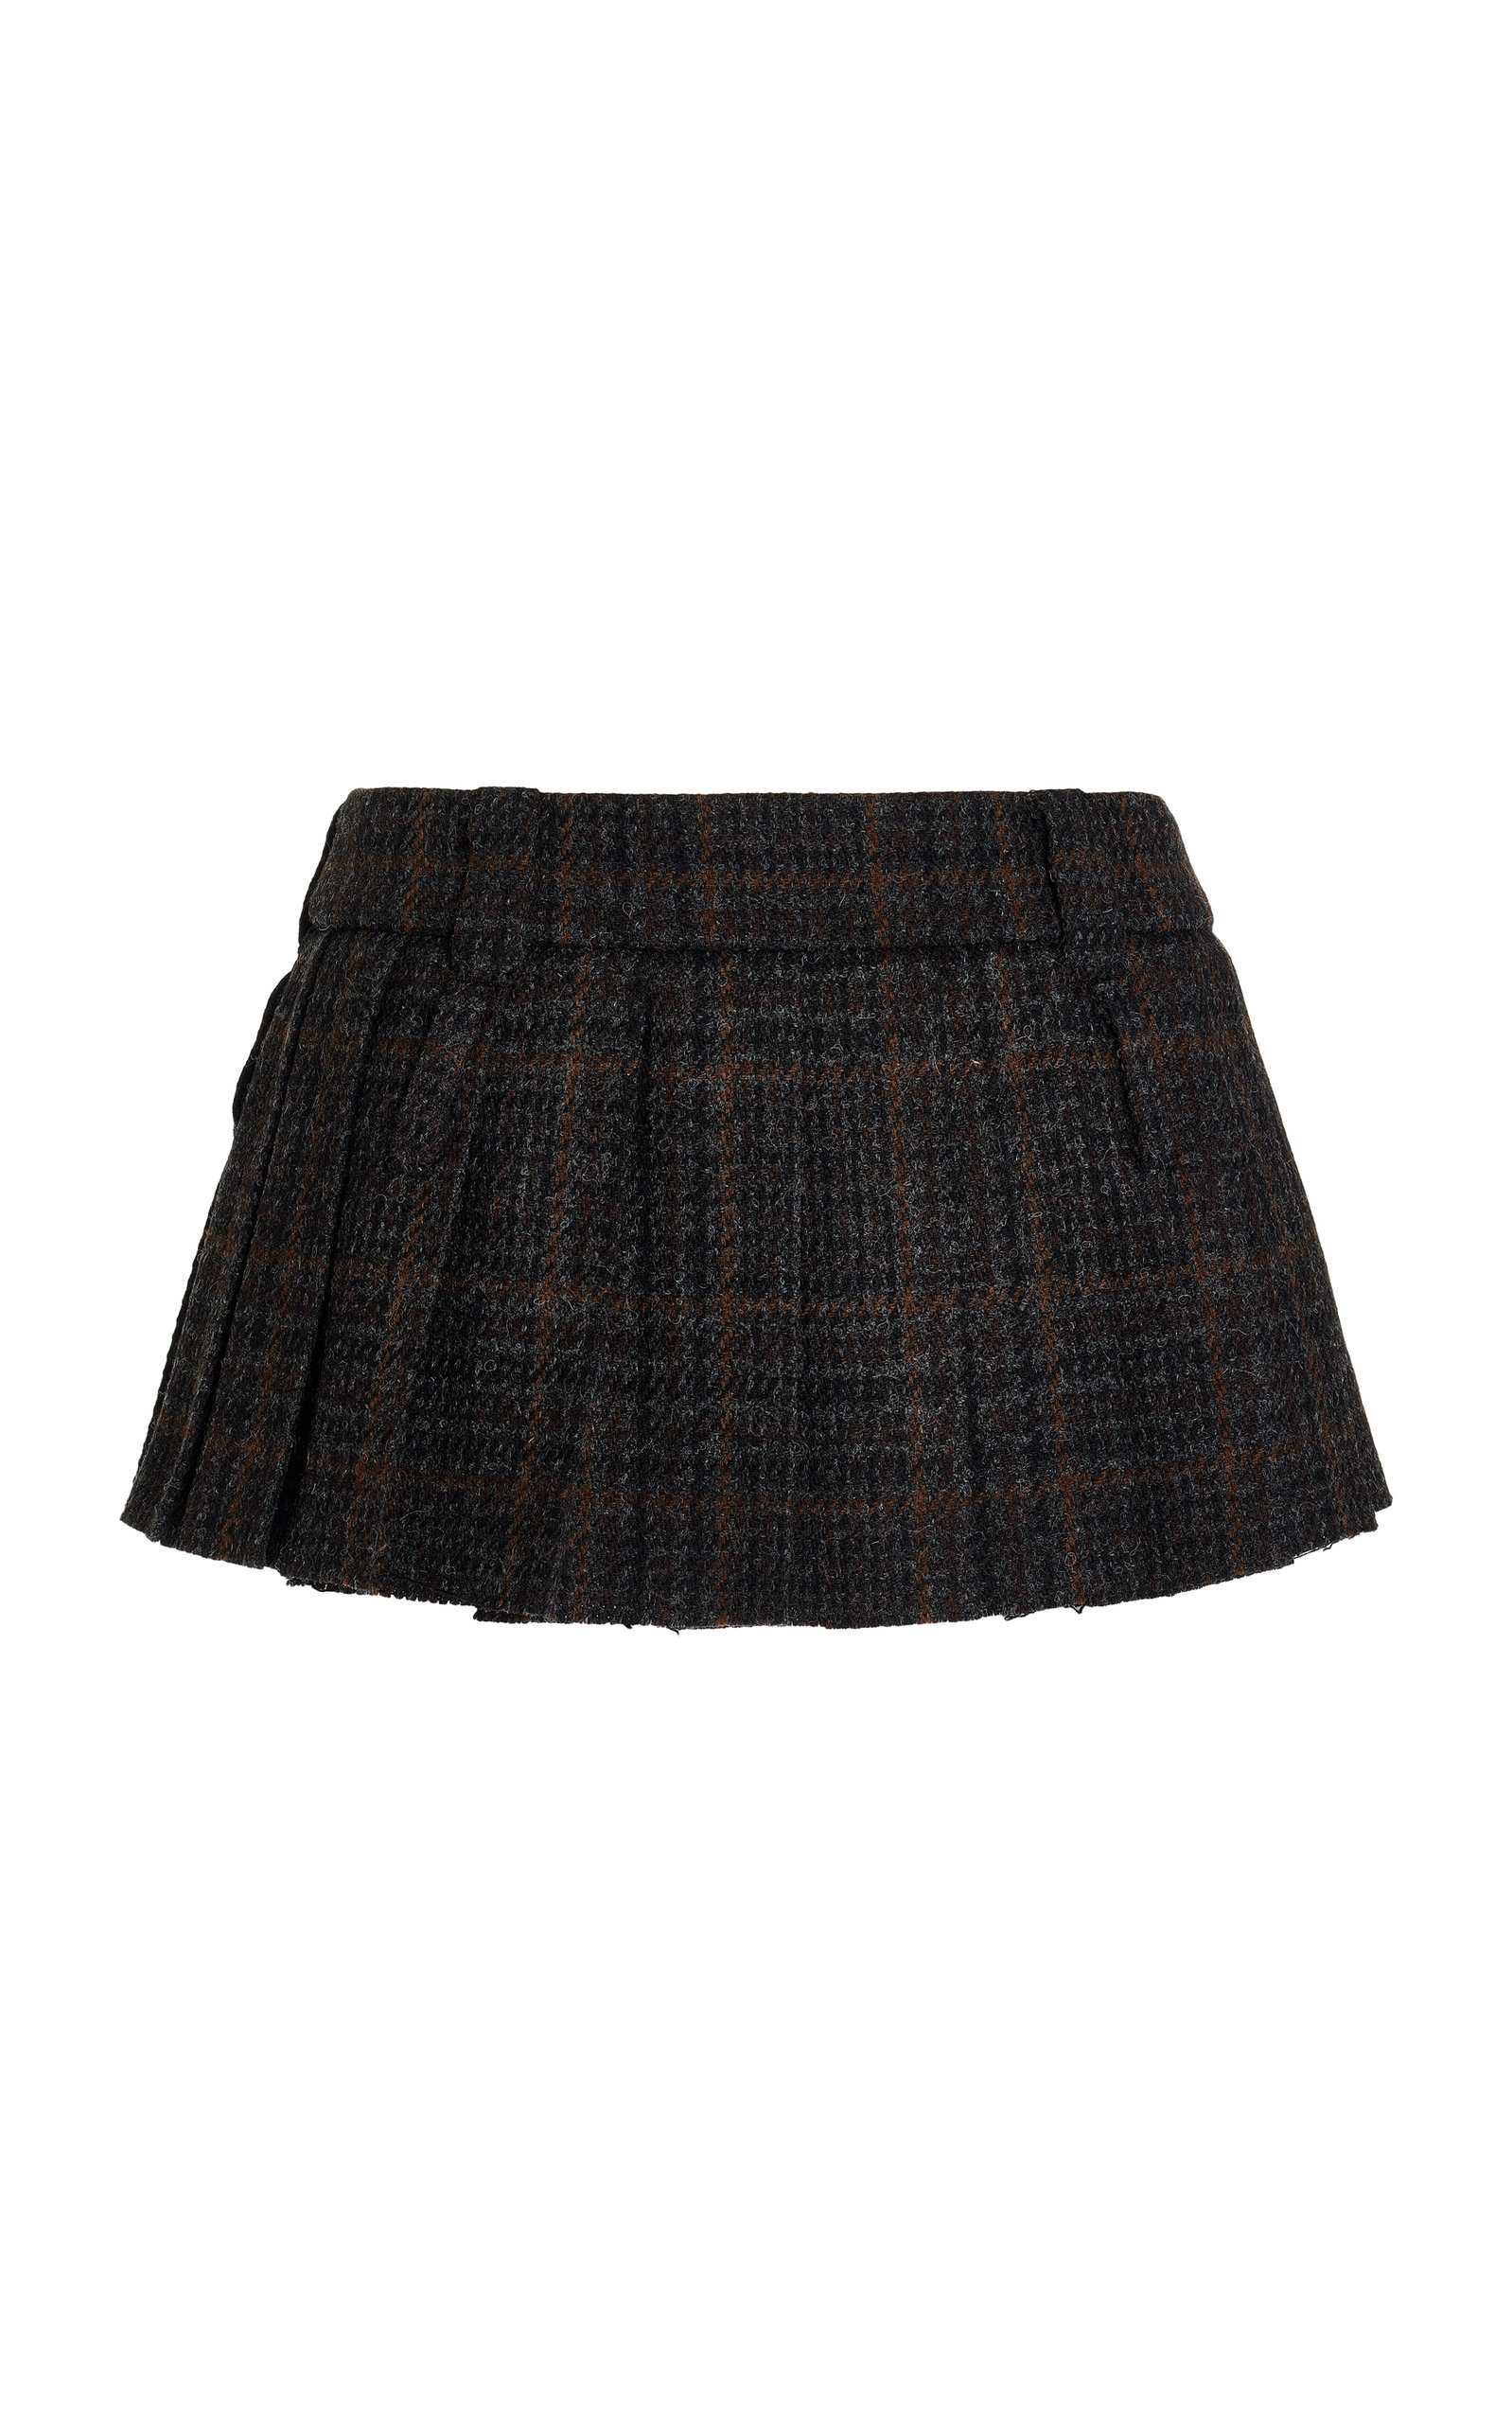 Miu Miu Women's Plaid Mini Skirt